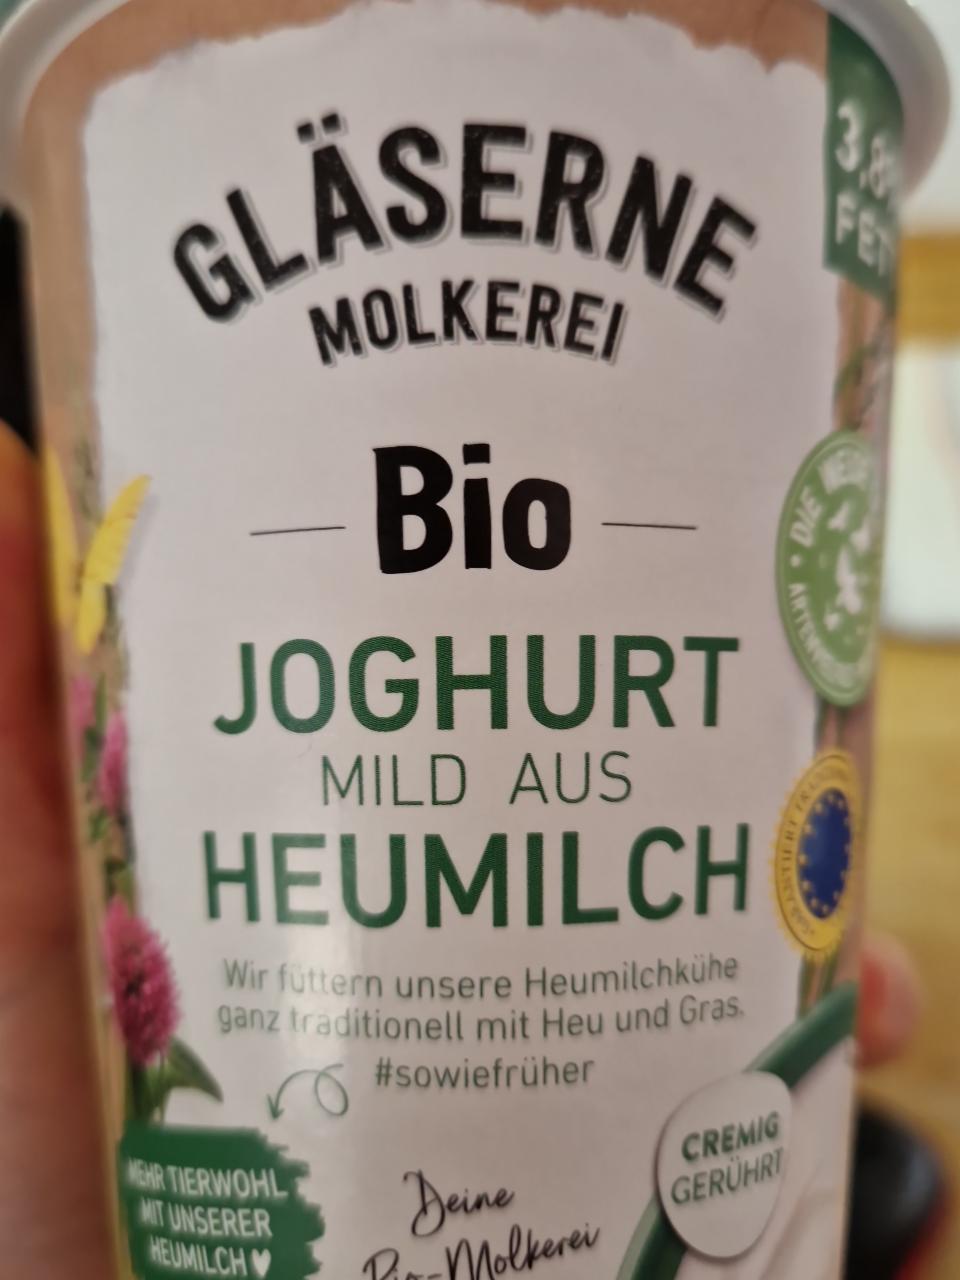 Fotografie - Bio Joghurt mild aus heumilch Gläserne Molkerei